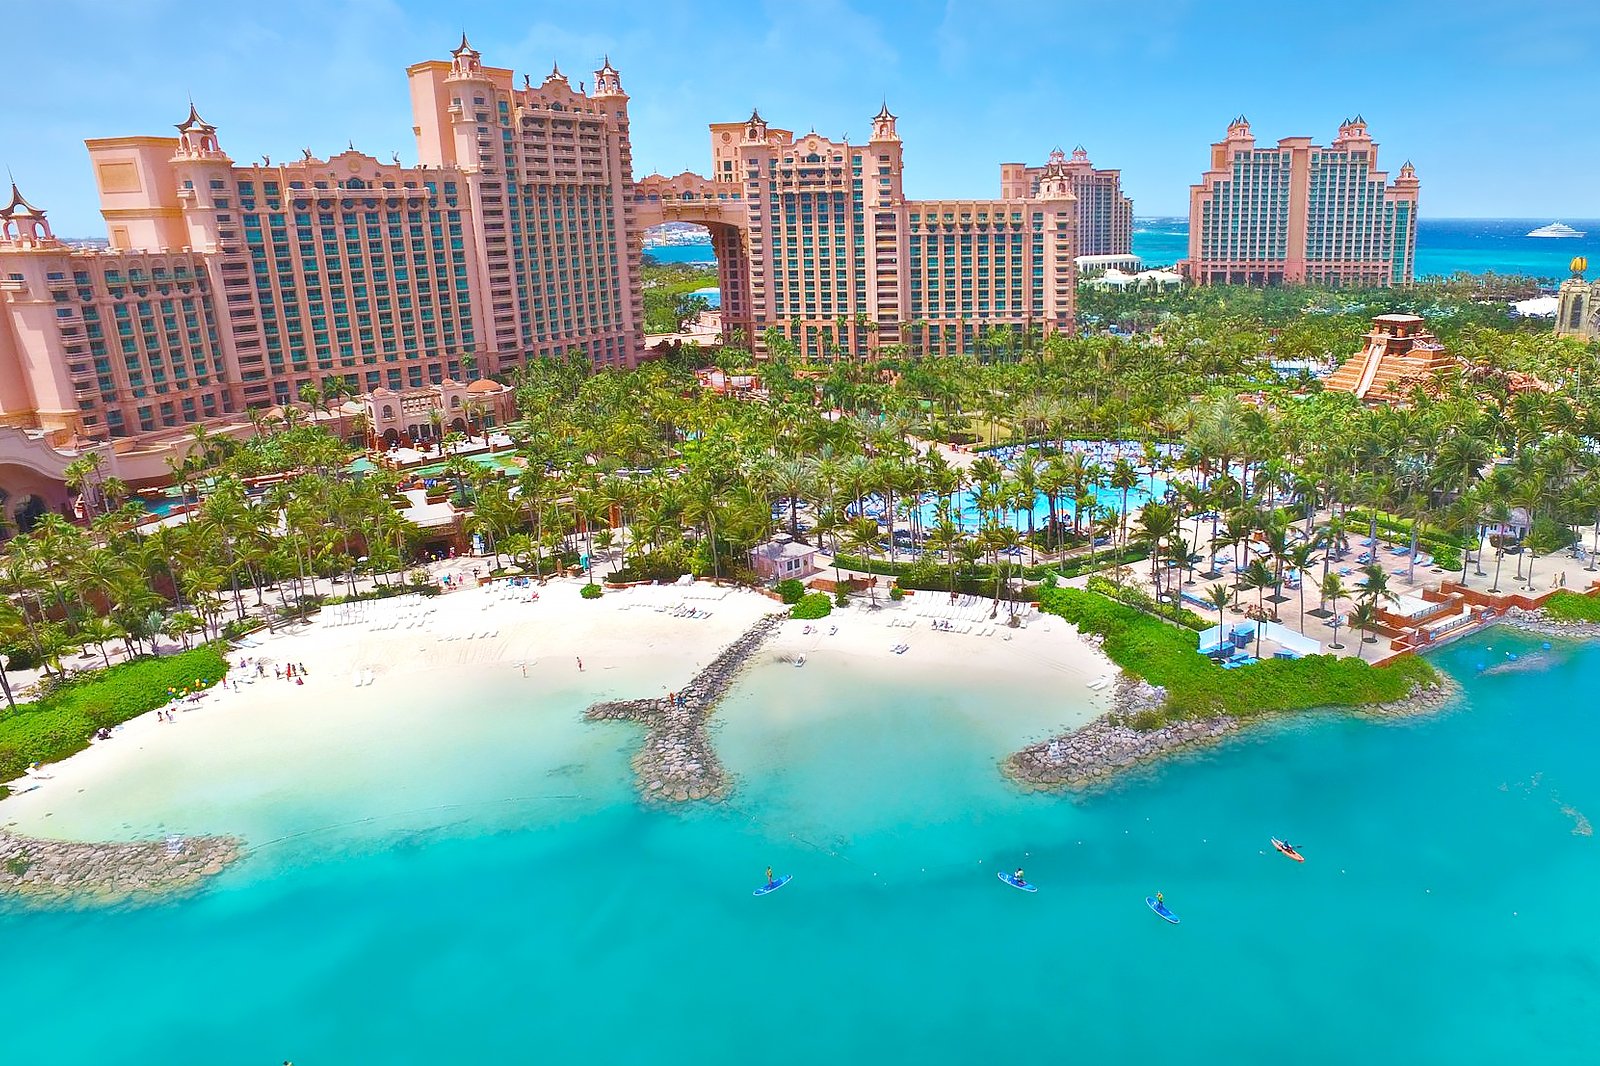 Vista aérea de zona hotelera en las Bahamas